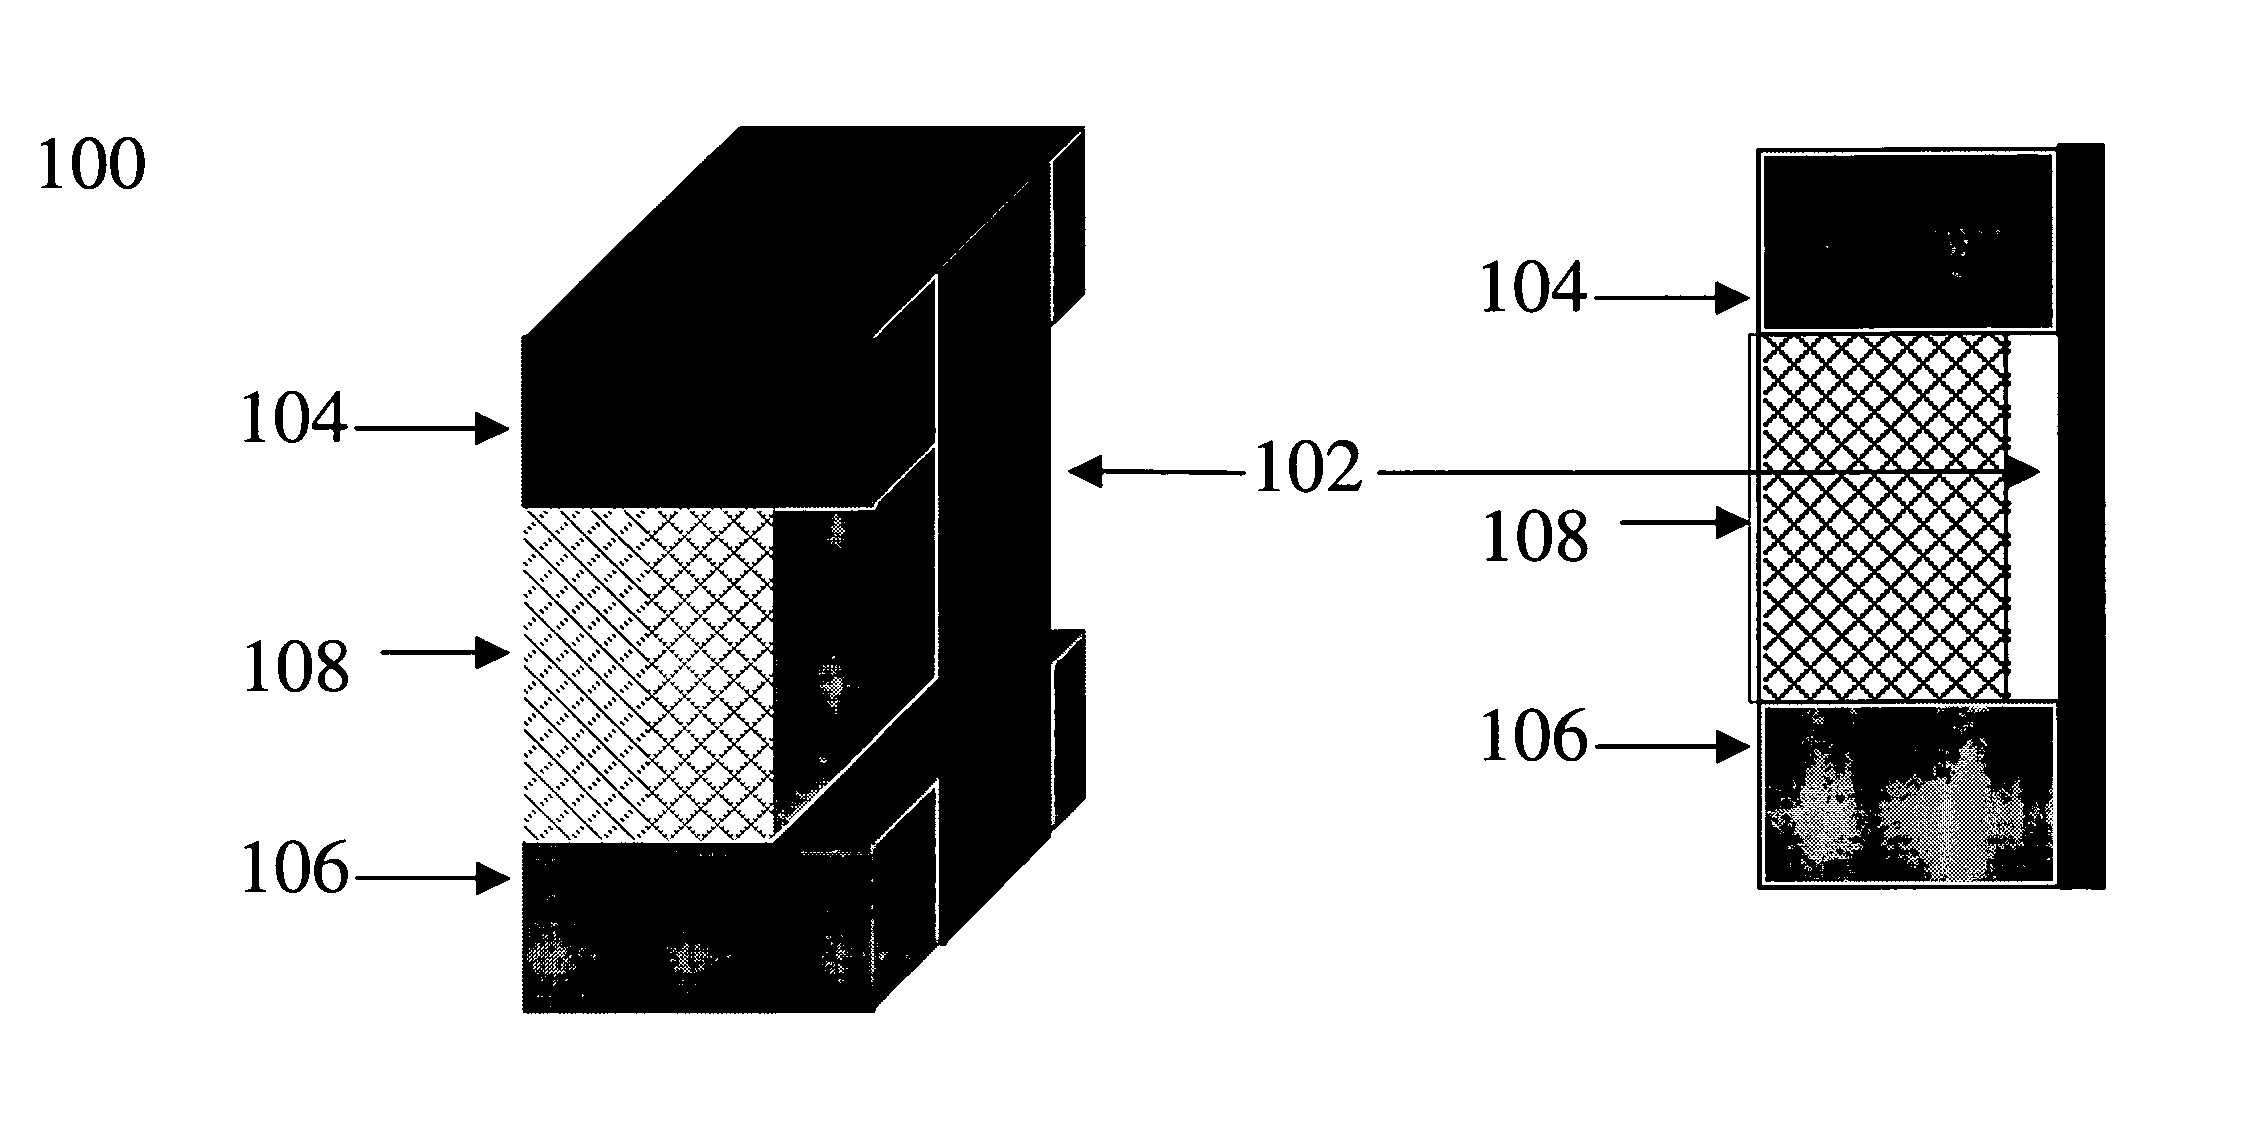 Uses of nanofabric-based electro-mechanical switches